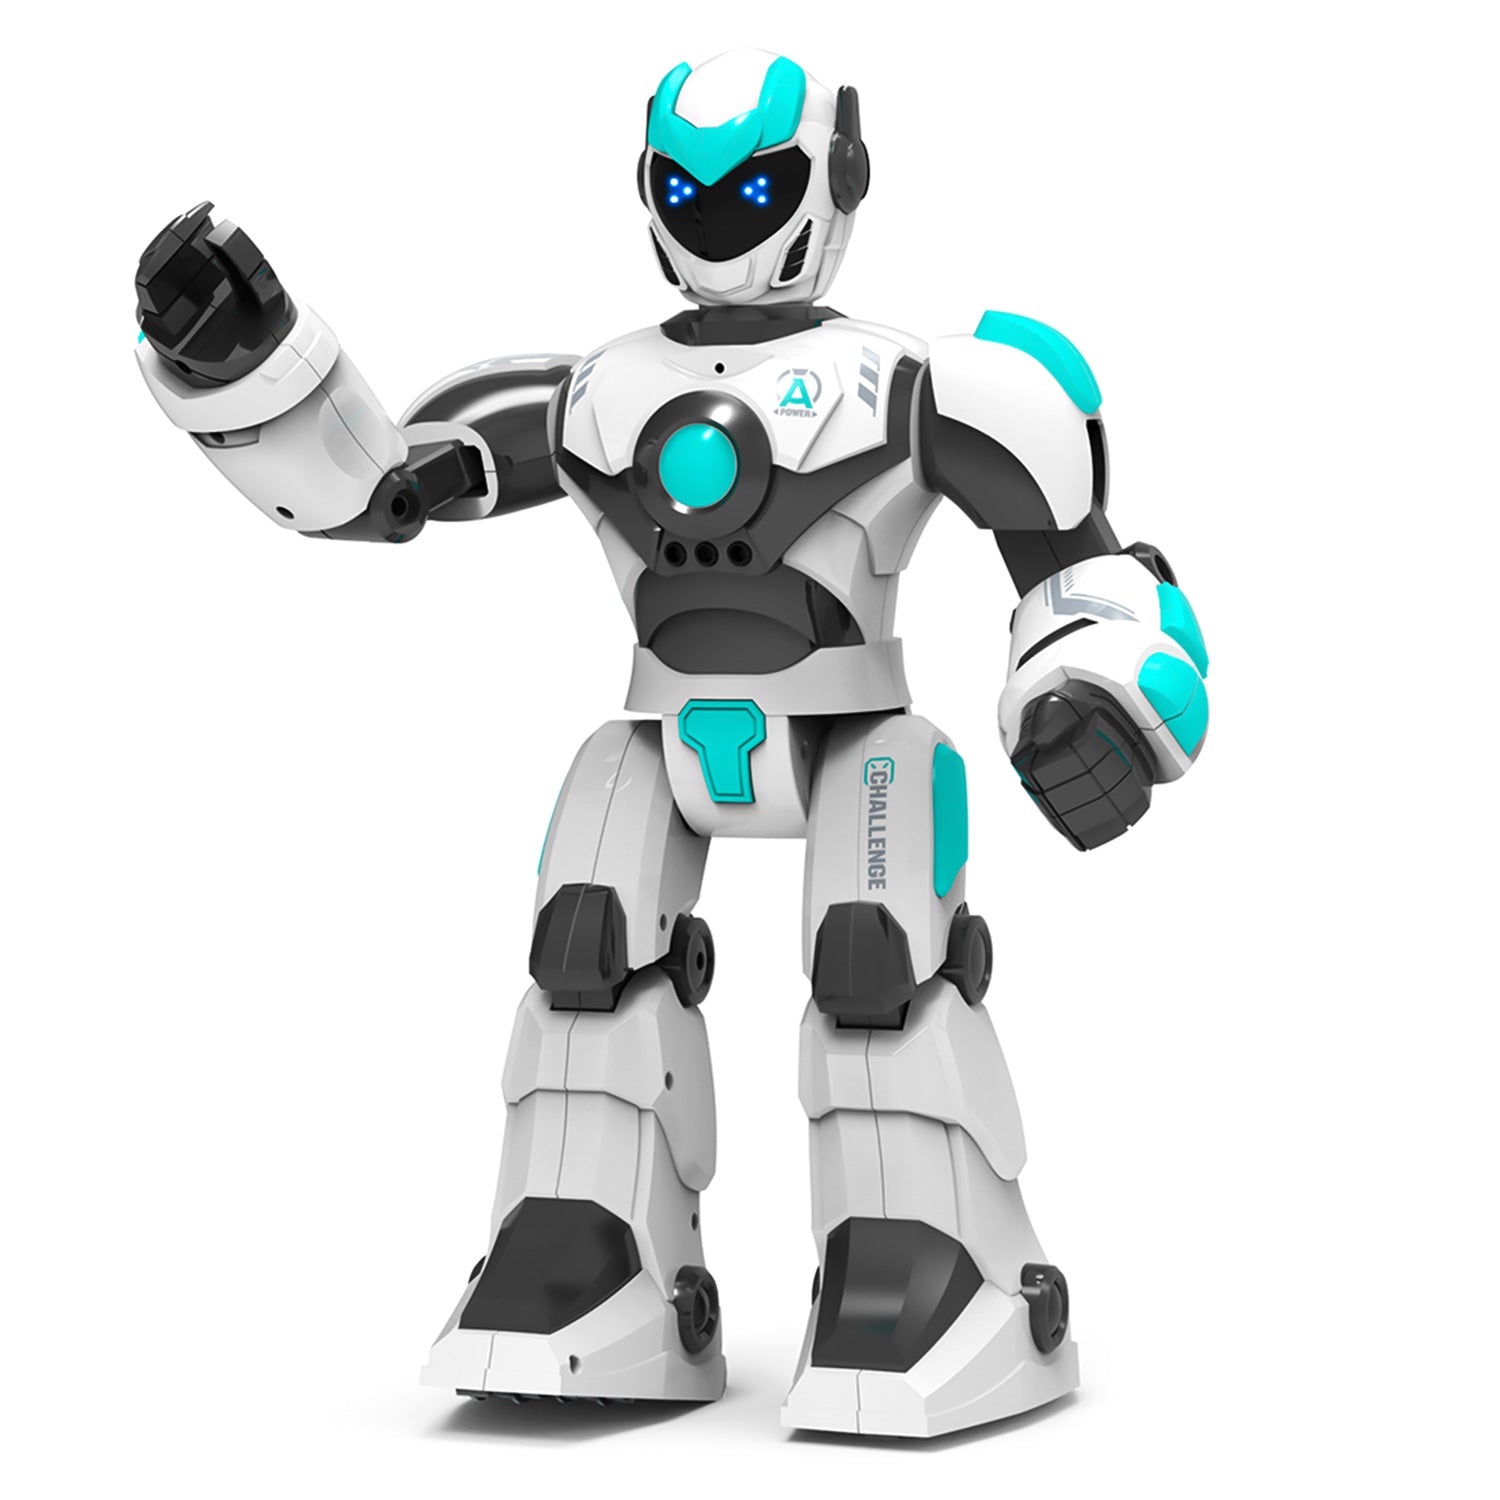 STEMTRON Robot de control remoto inteligente controlado por voz inteligente para niños (blanco)